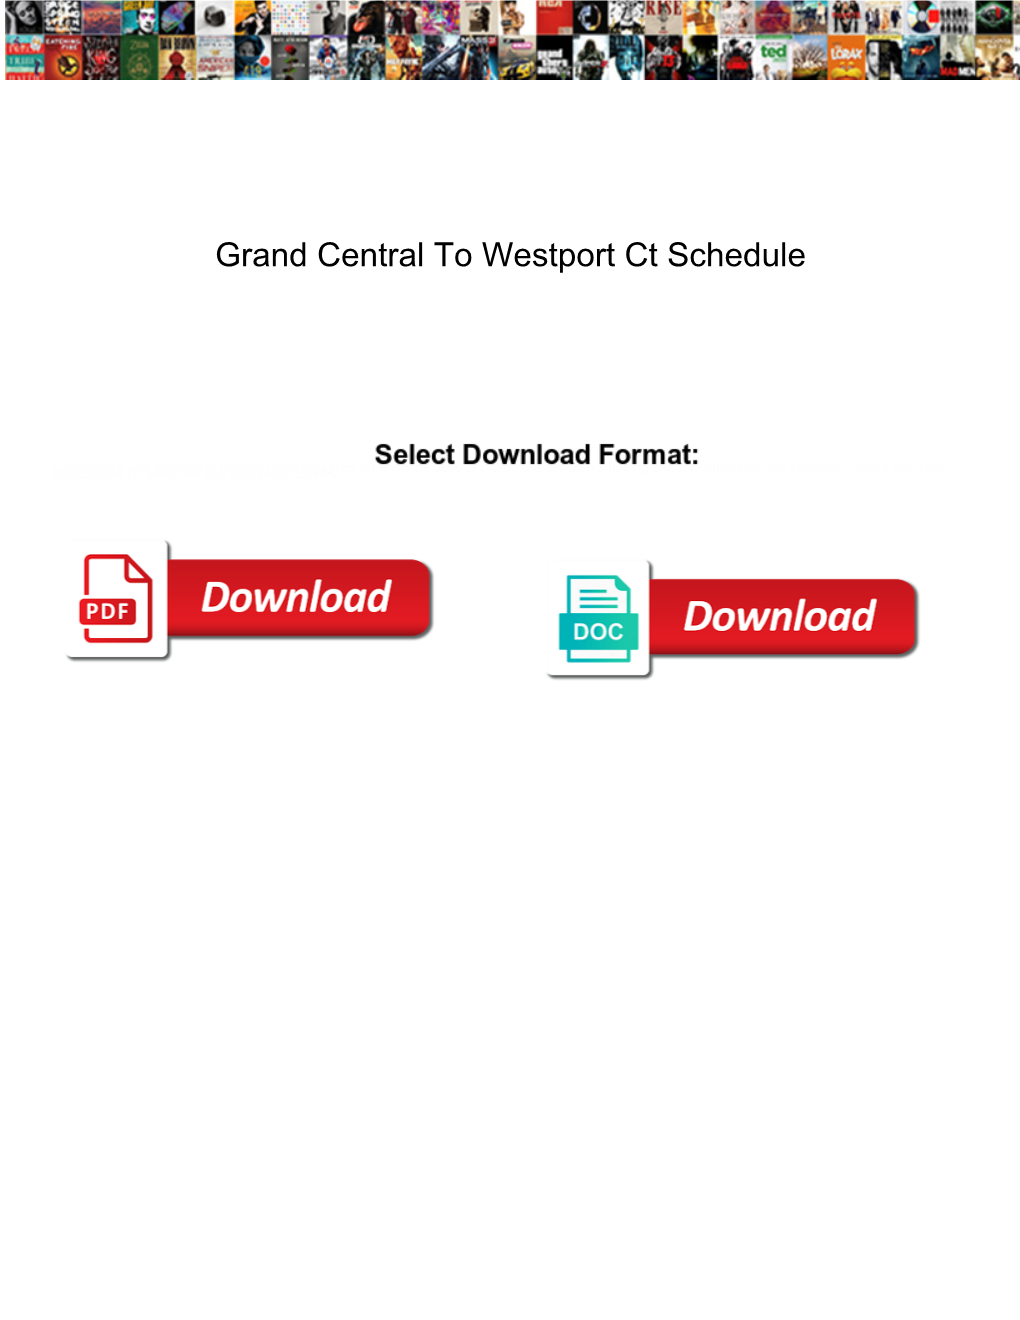 Grand Central to Westport Ct Schedule